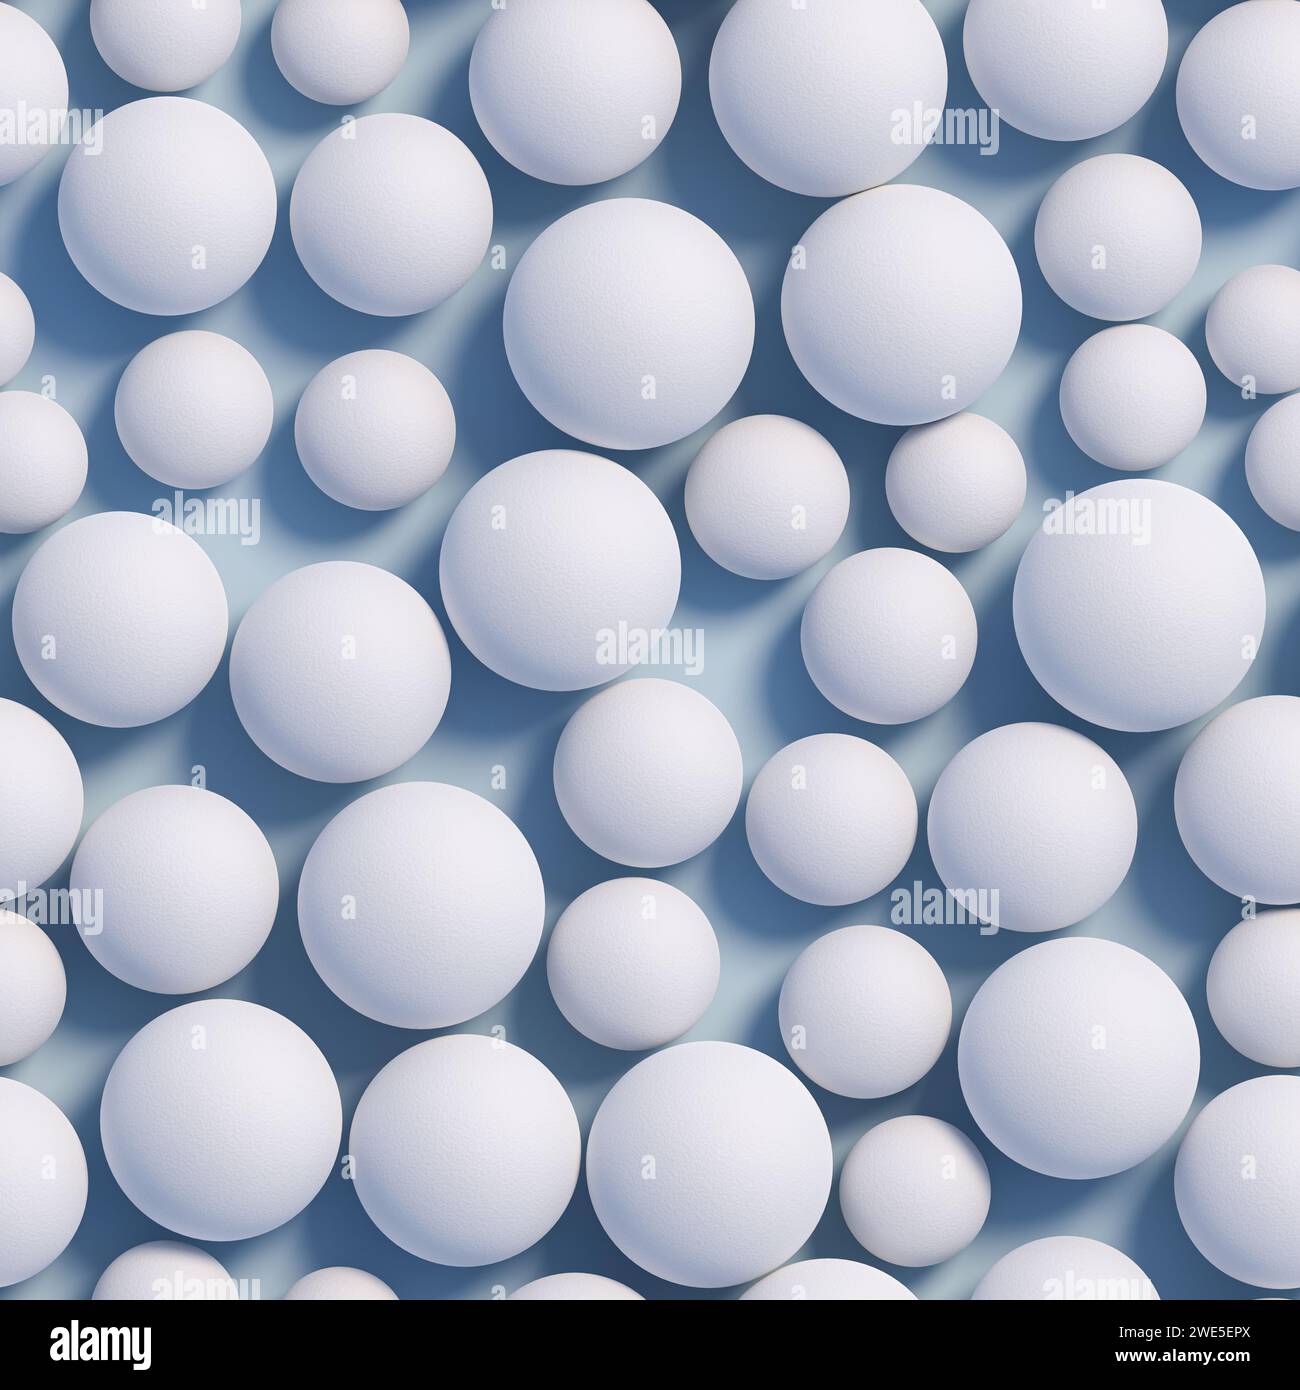 Weiße Kugeln in verschiedenen Größen mit einer rauen Oberfläche auf einer blauen Ebene. Nahtlos aneinanderreihendes Bild. Stockfoto